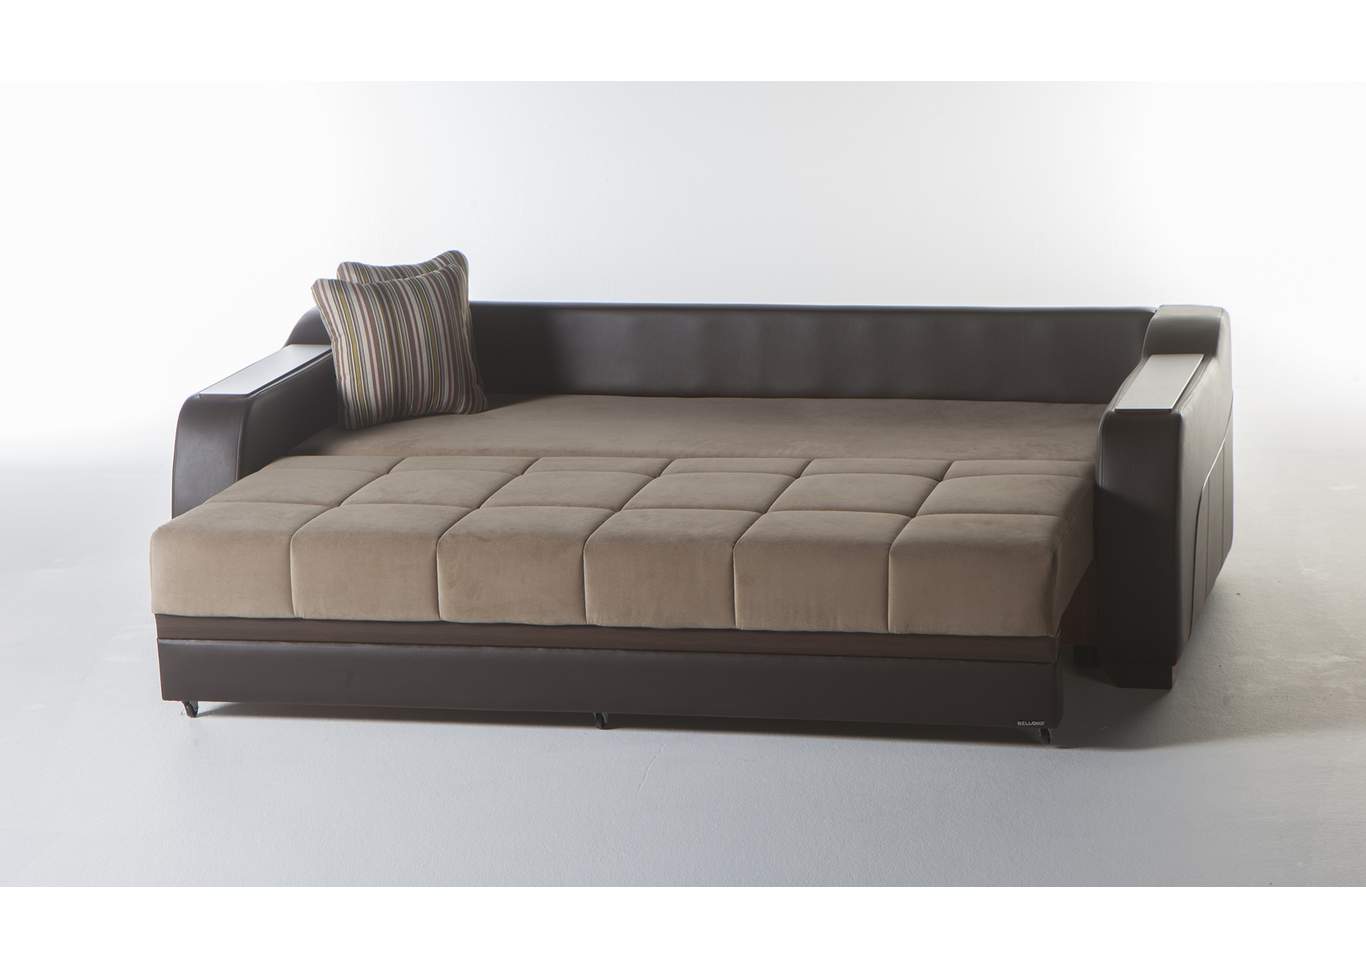 Ultra Lilyum Vizon 3 Seat Sleeper Sofa,Hudson Furniture & Bedding